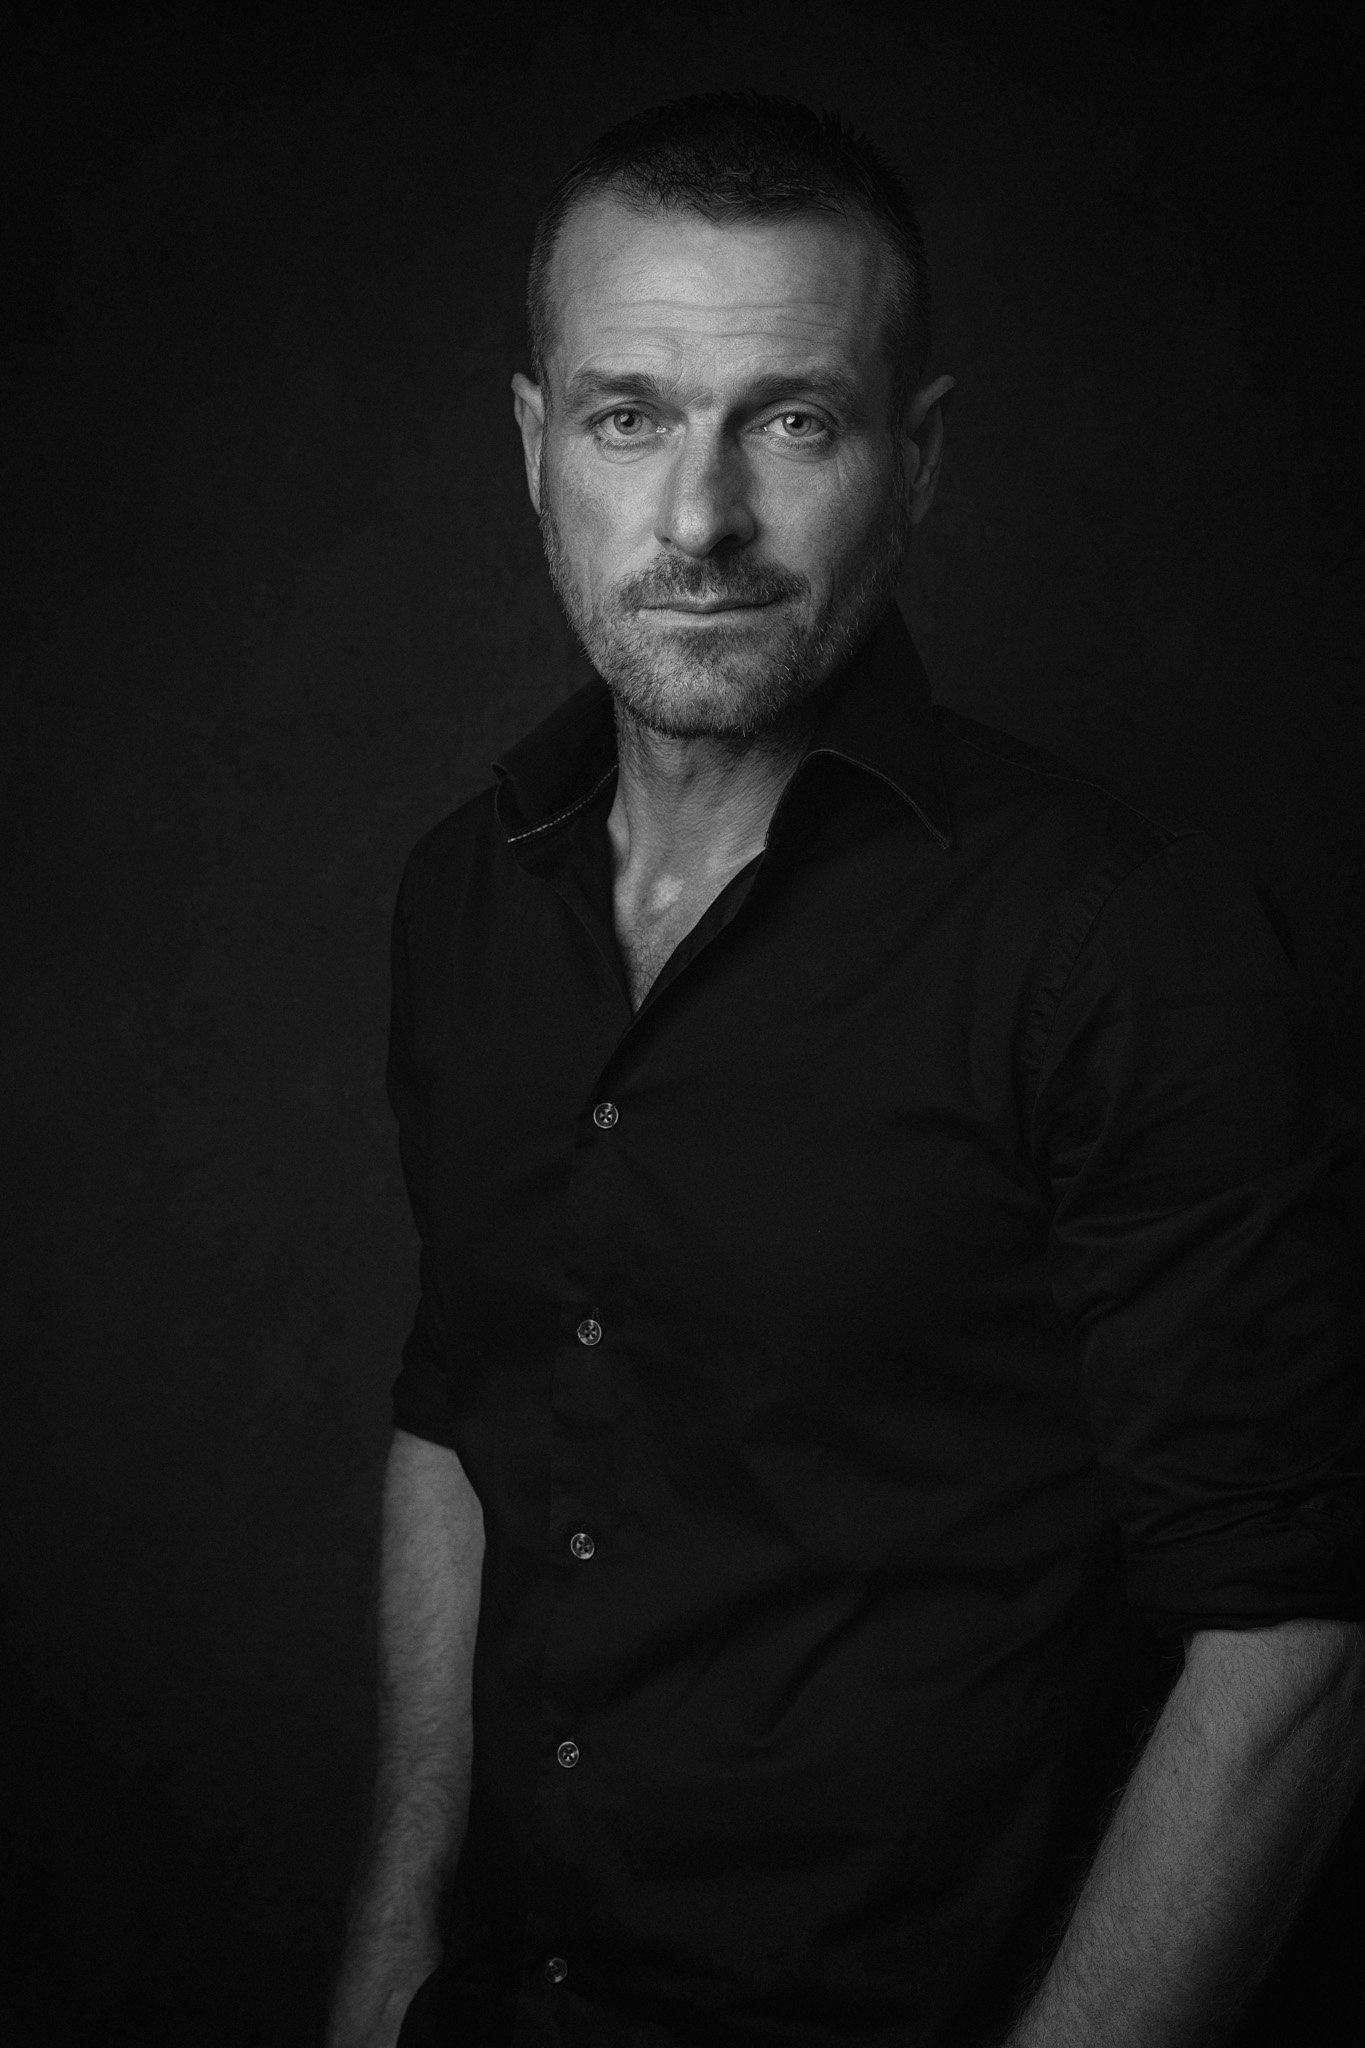 homme classique fashion magazine noir-et-blanc photo portrait studio lot-et-garonne marmande tonneins virazeil